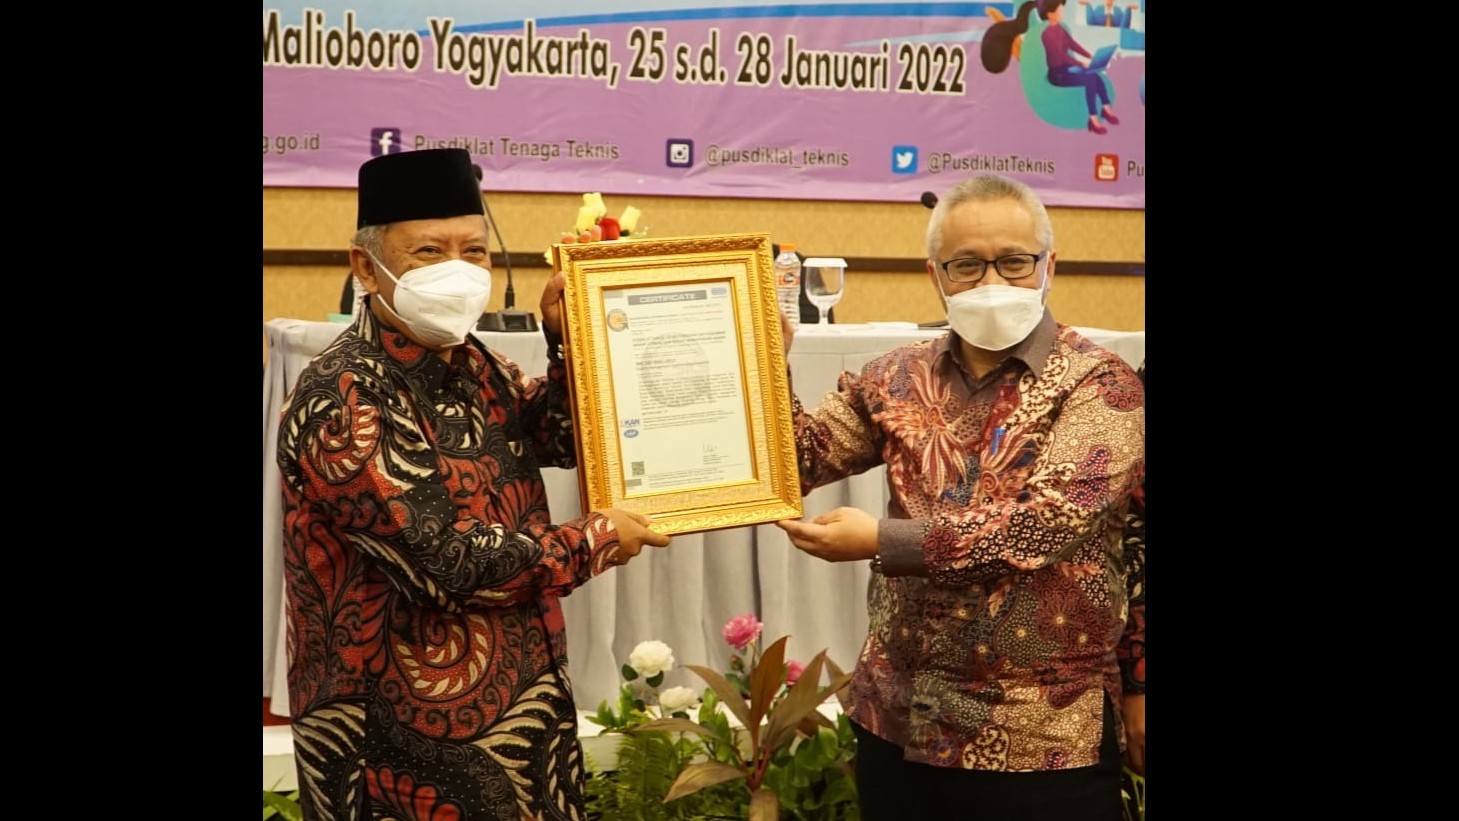 Kapusdiklat Teknis Keagamaan Imam Syafe'i (berpeci) menerima Piagam ISO 9001:2015, Selasa (25/1/2022)